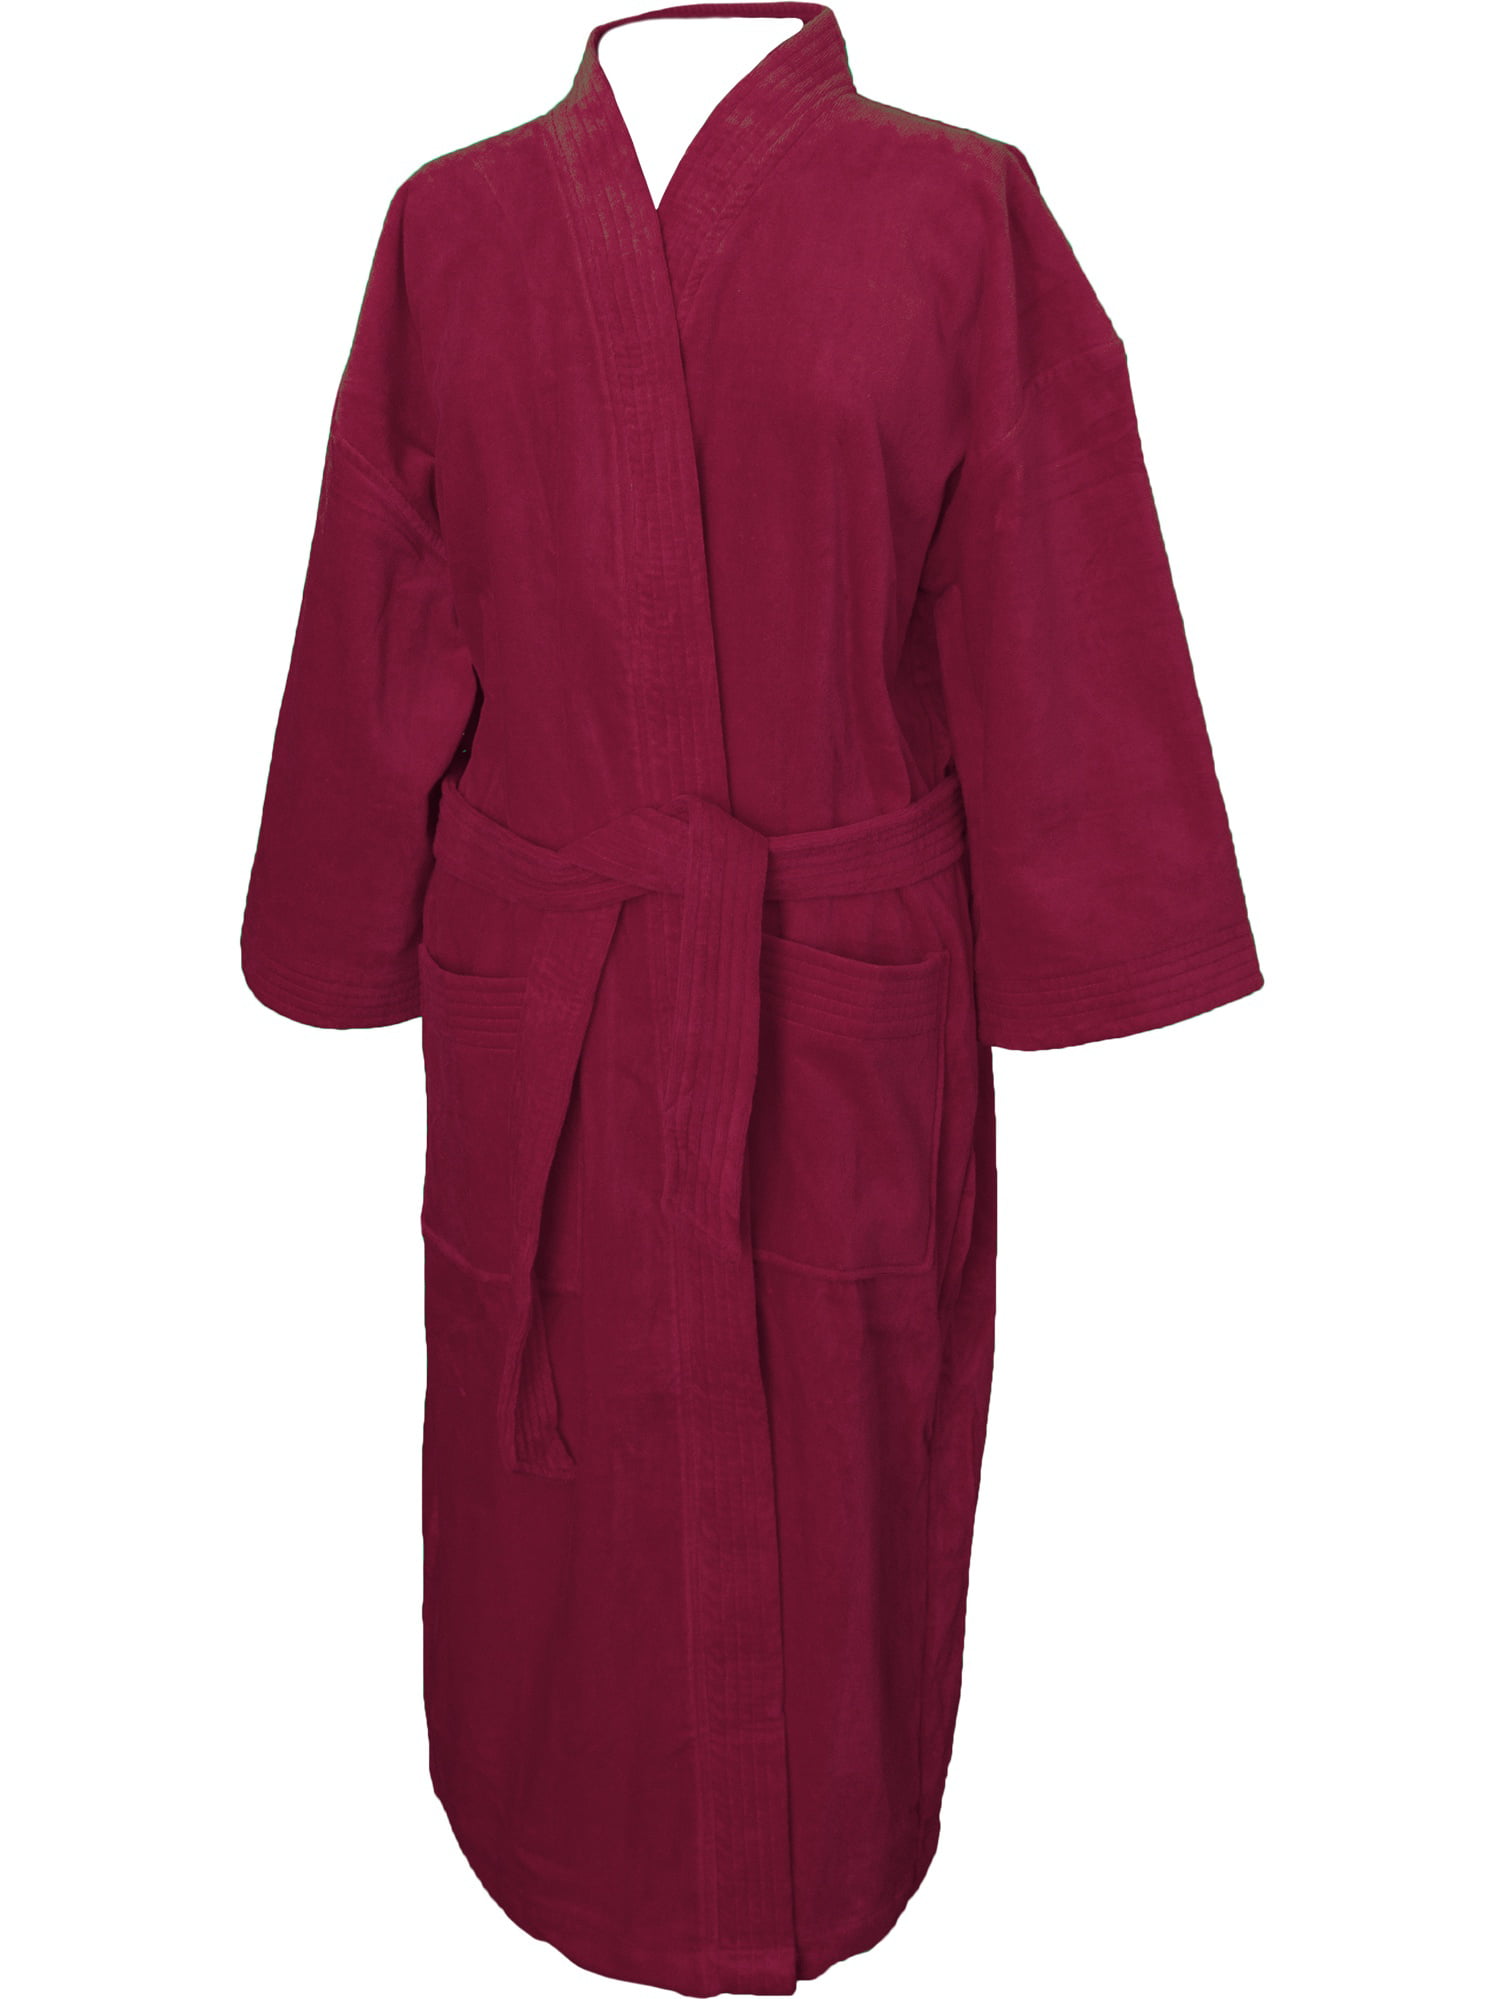 Terry Velour Kimono Robe-Burgundy - Walmart.com